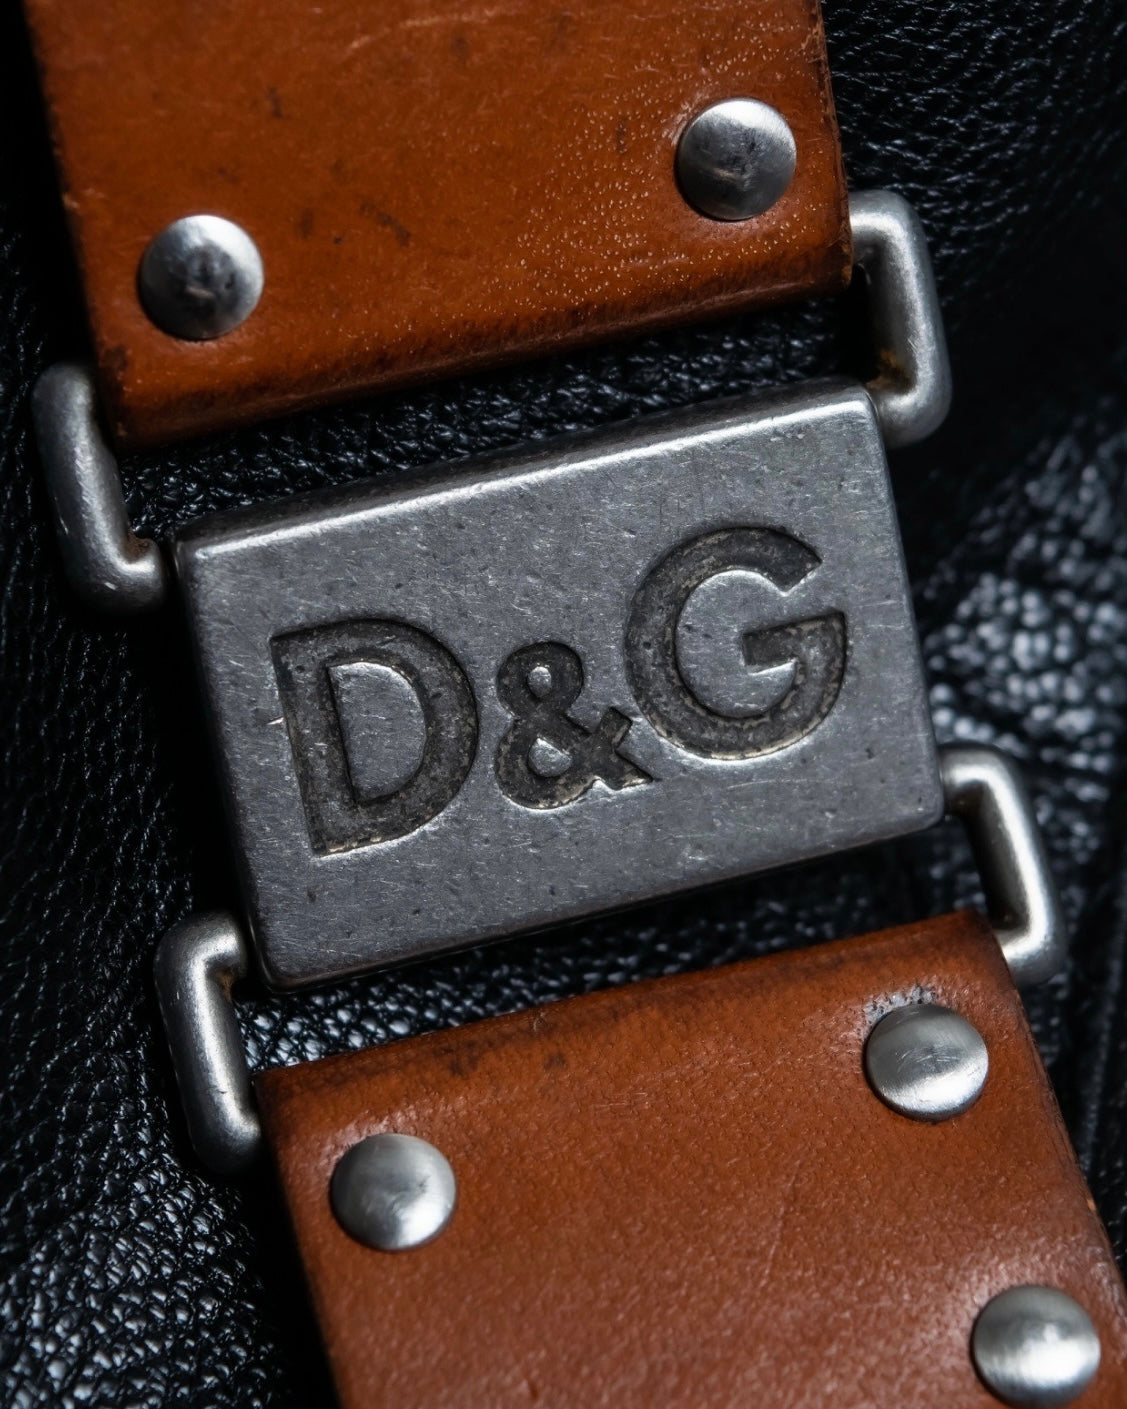 Dolce&Gabbana leather bangle